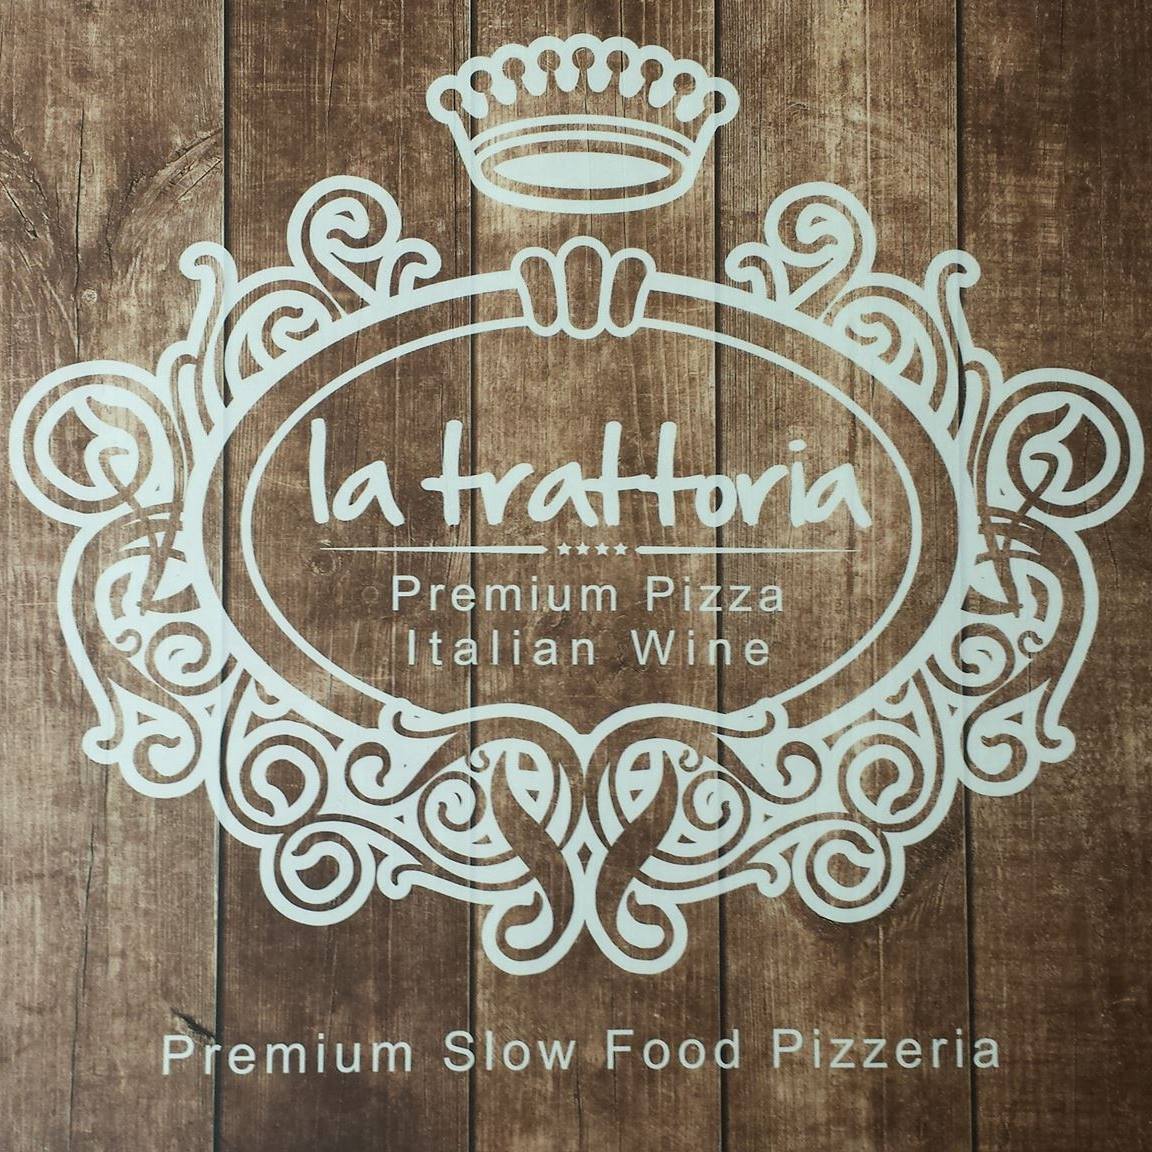 La Trattoria, Premium Pizza & Italian Wine